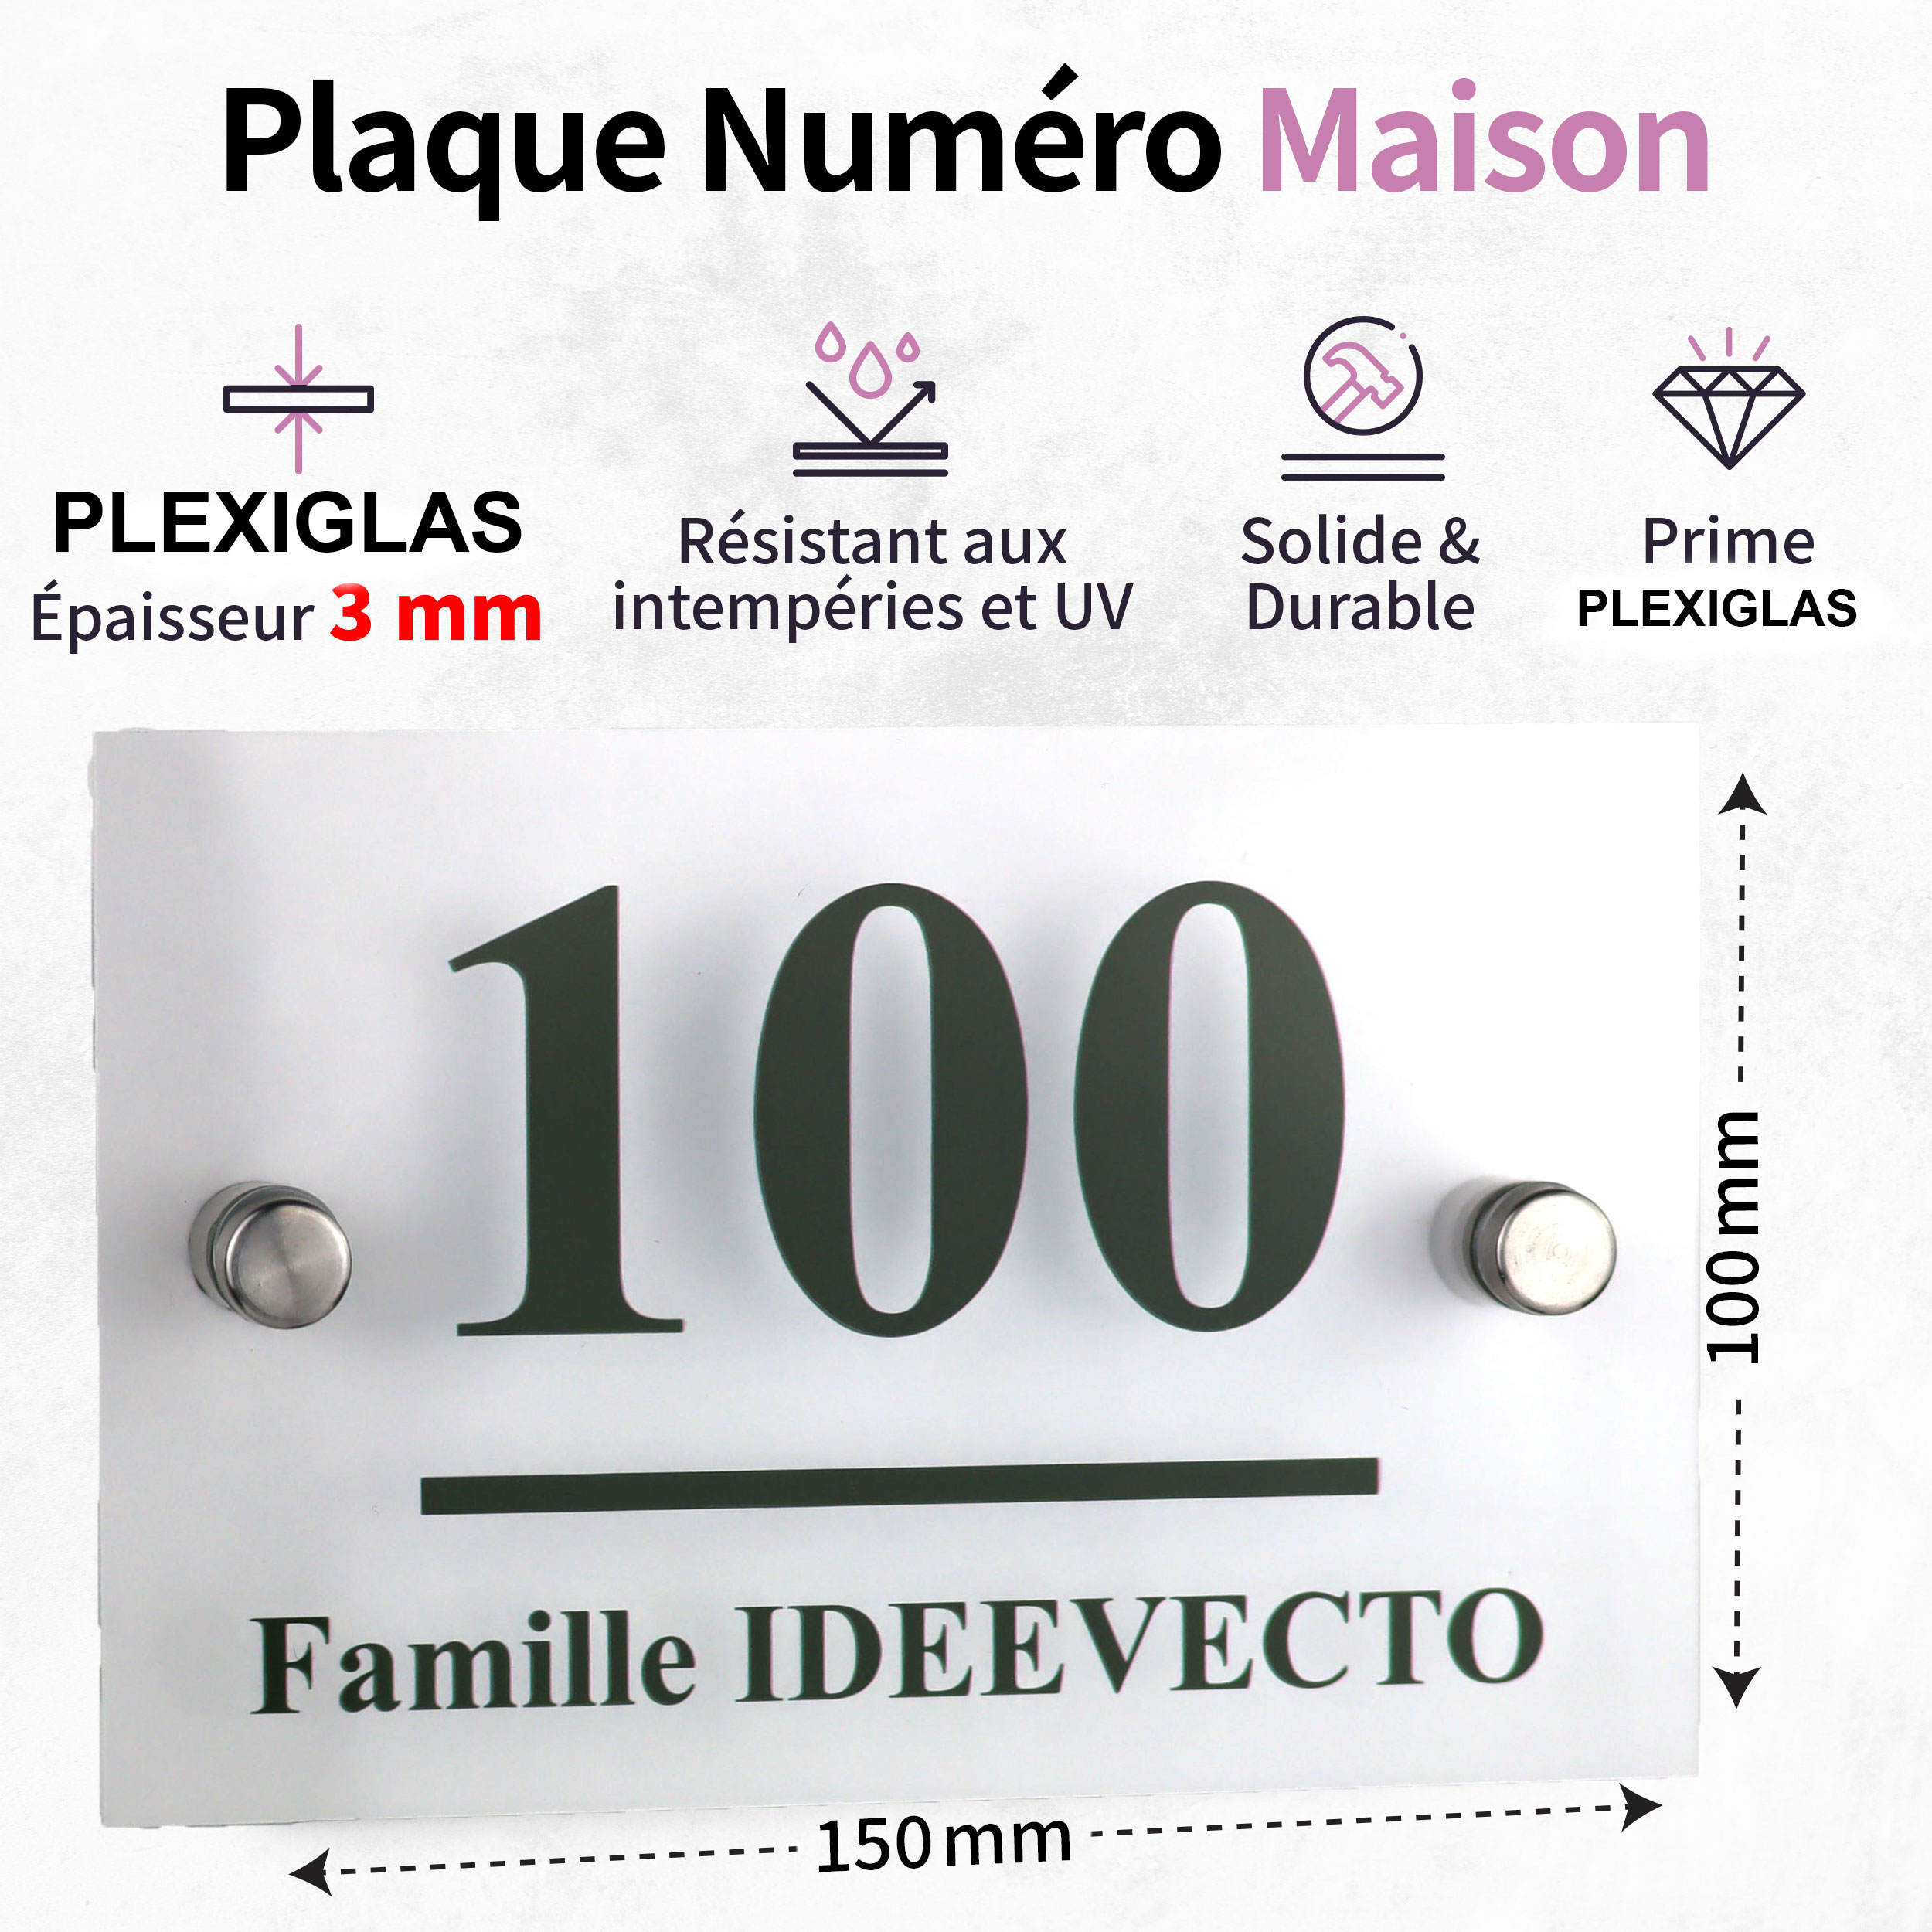 Plaque Numéro Maison Avec Adresse Plexiglas - 3 dimensions disponibles